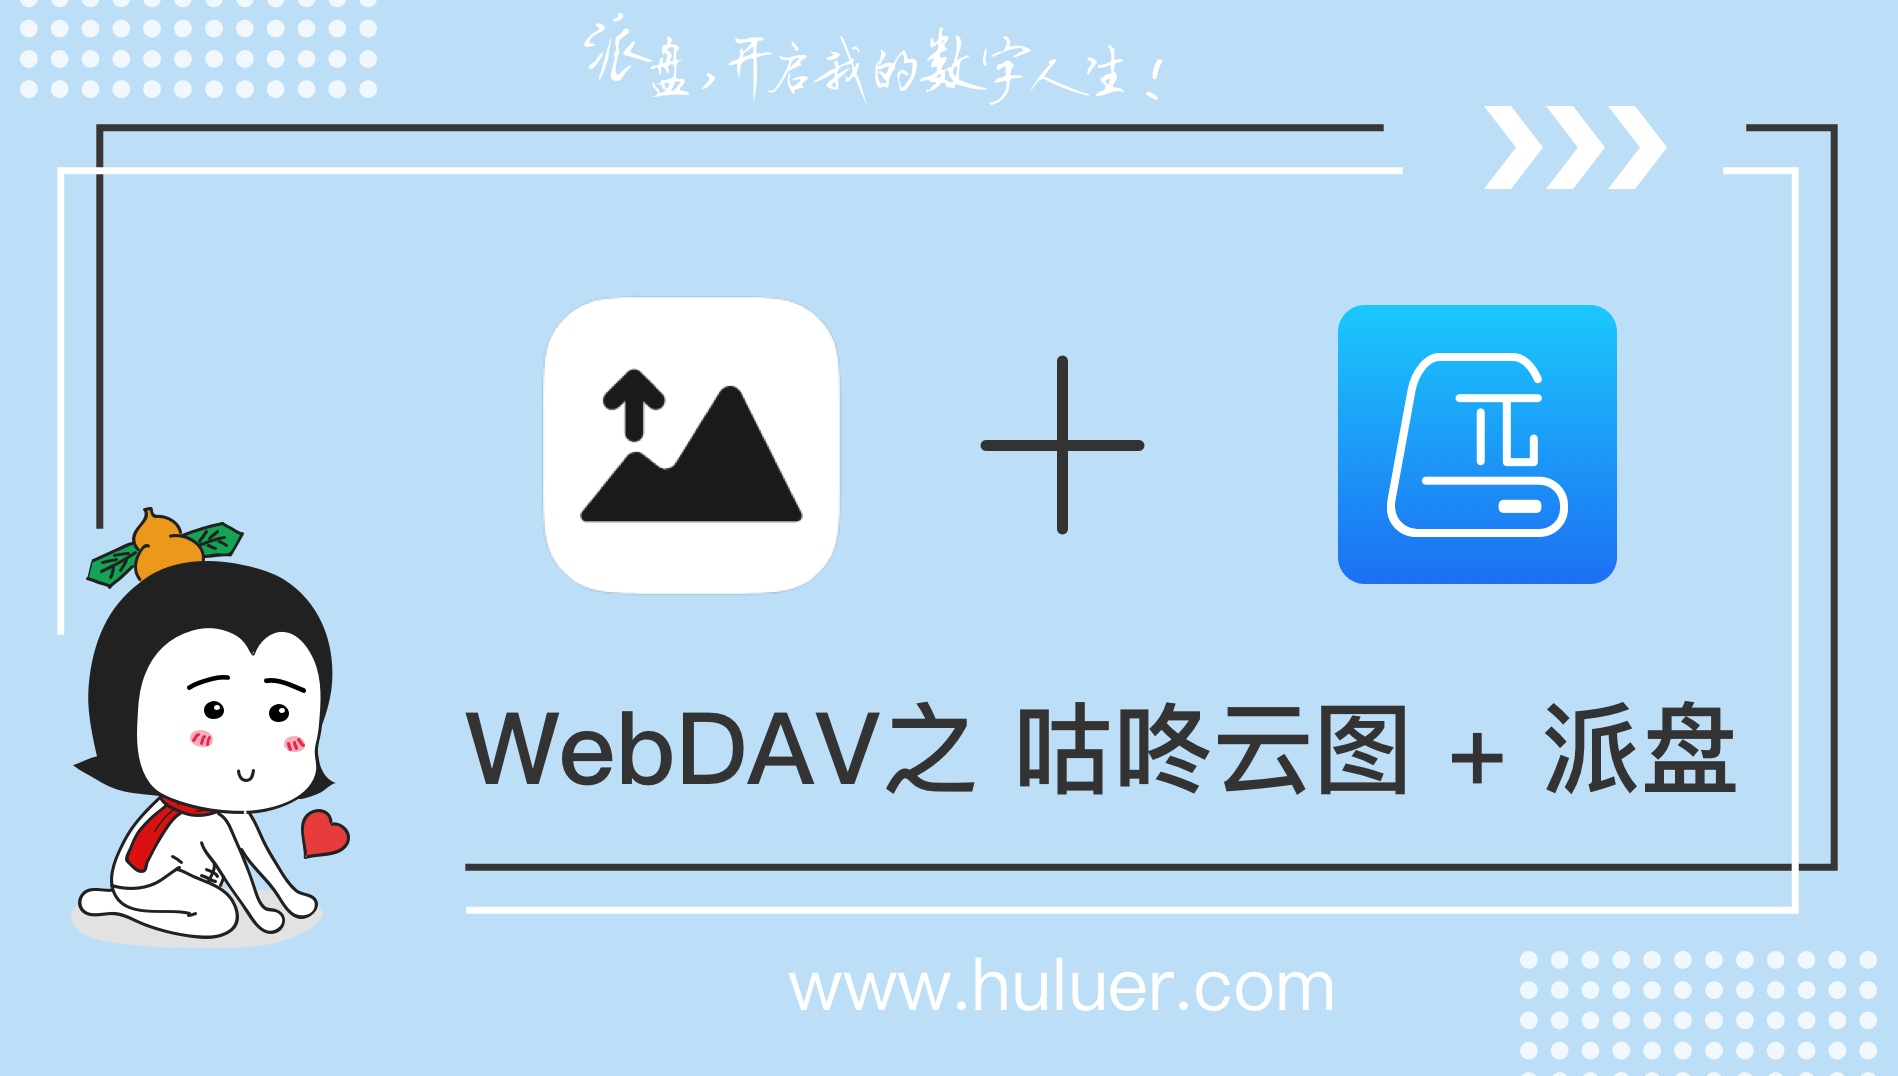 WebDAV之π-Disk派盘 + 咕咚云图